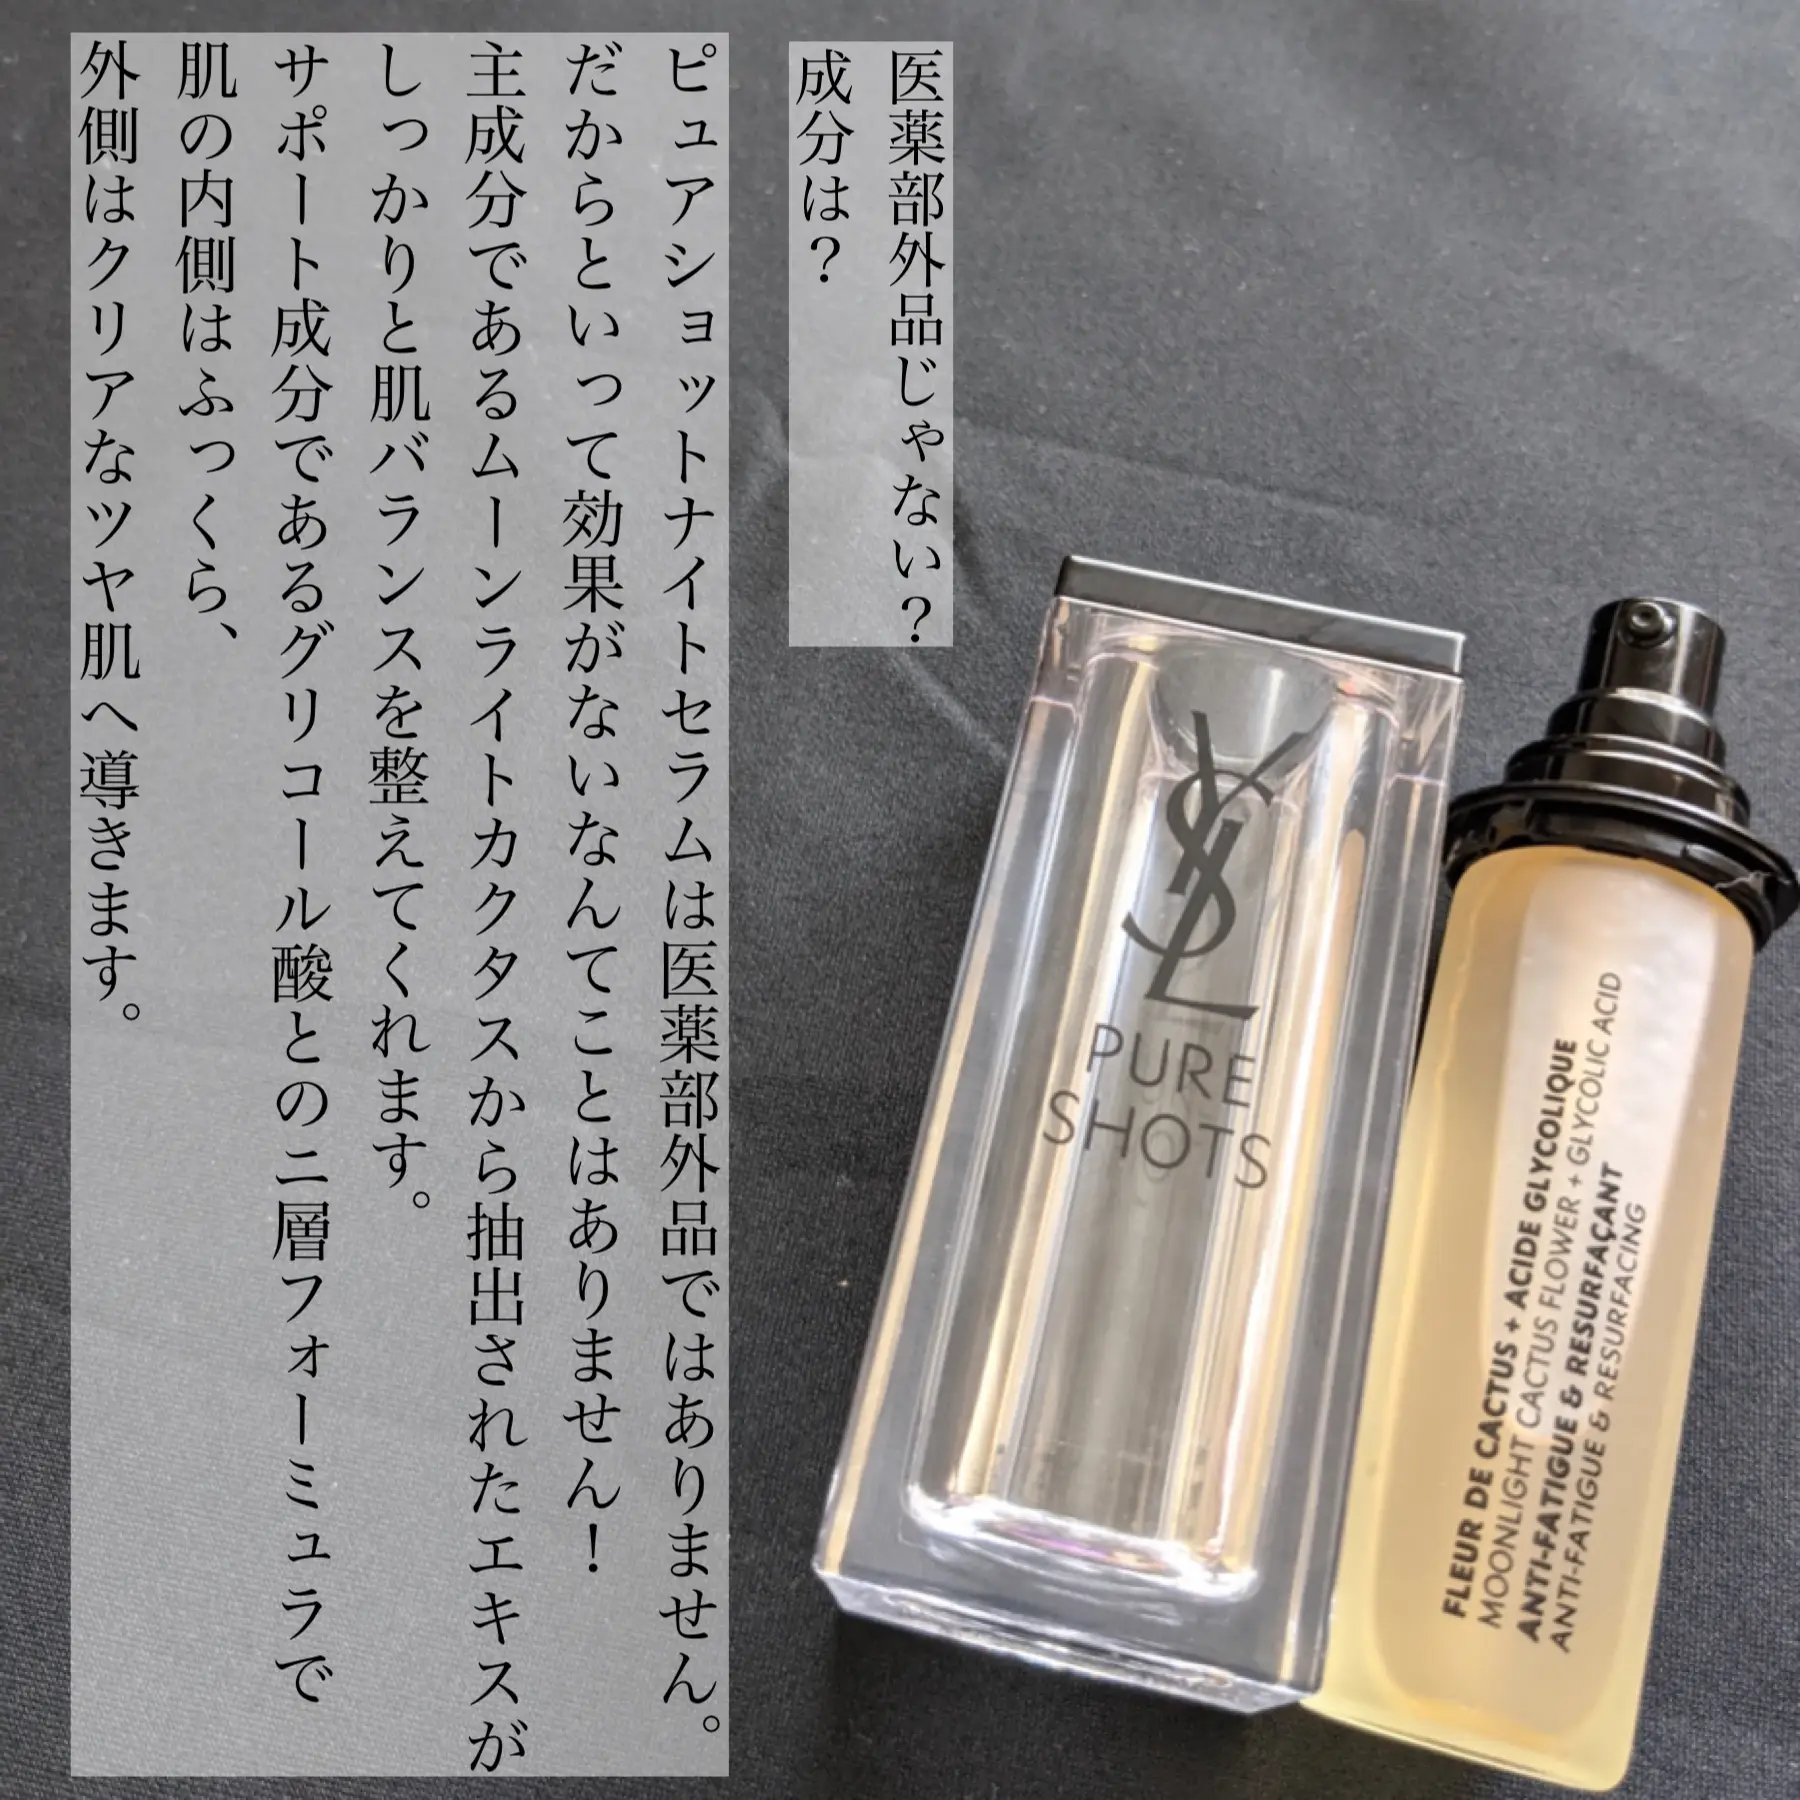 イブサンローラン ナイトショット50ml レフィル - スキンケア/基礎化粧品